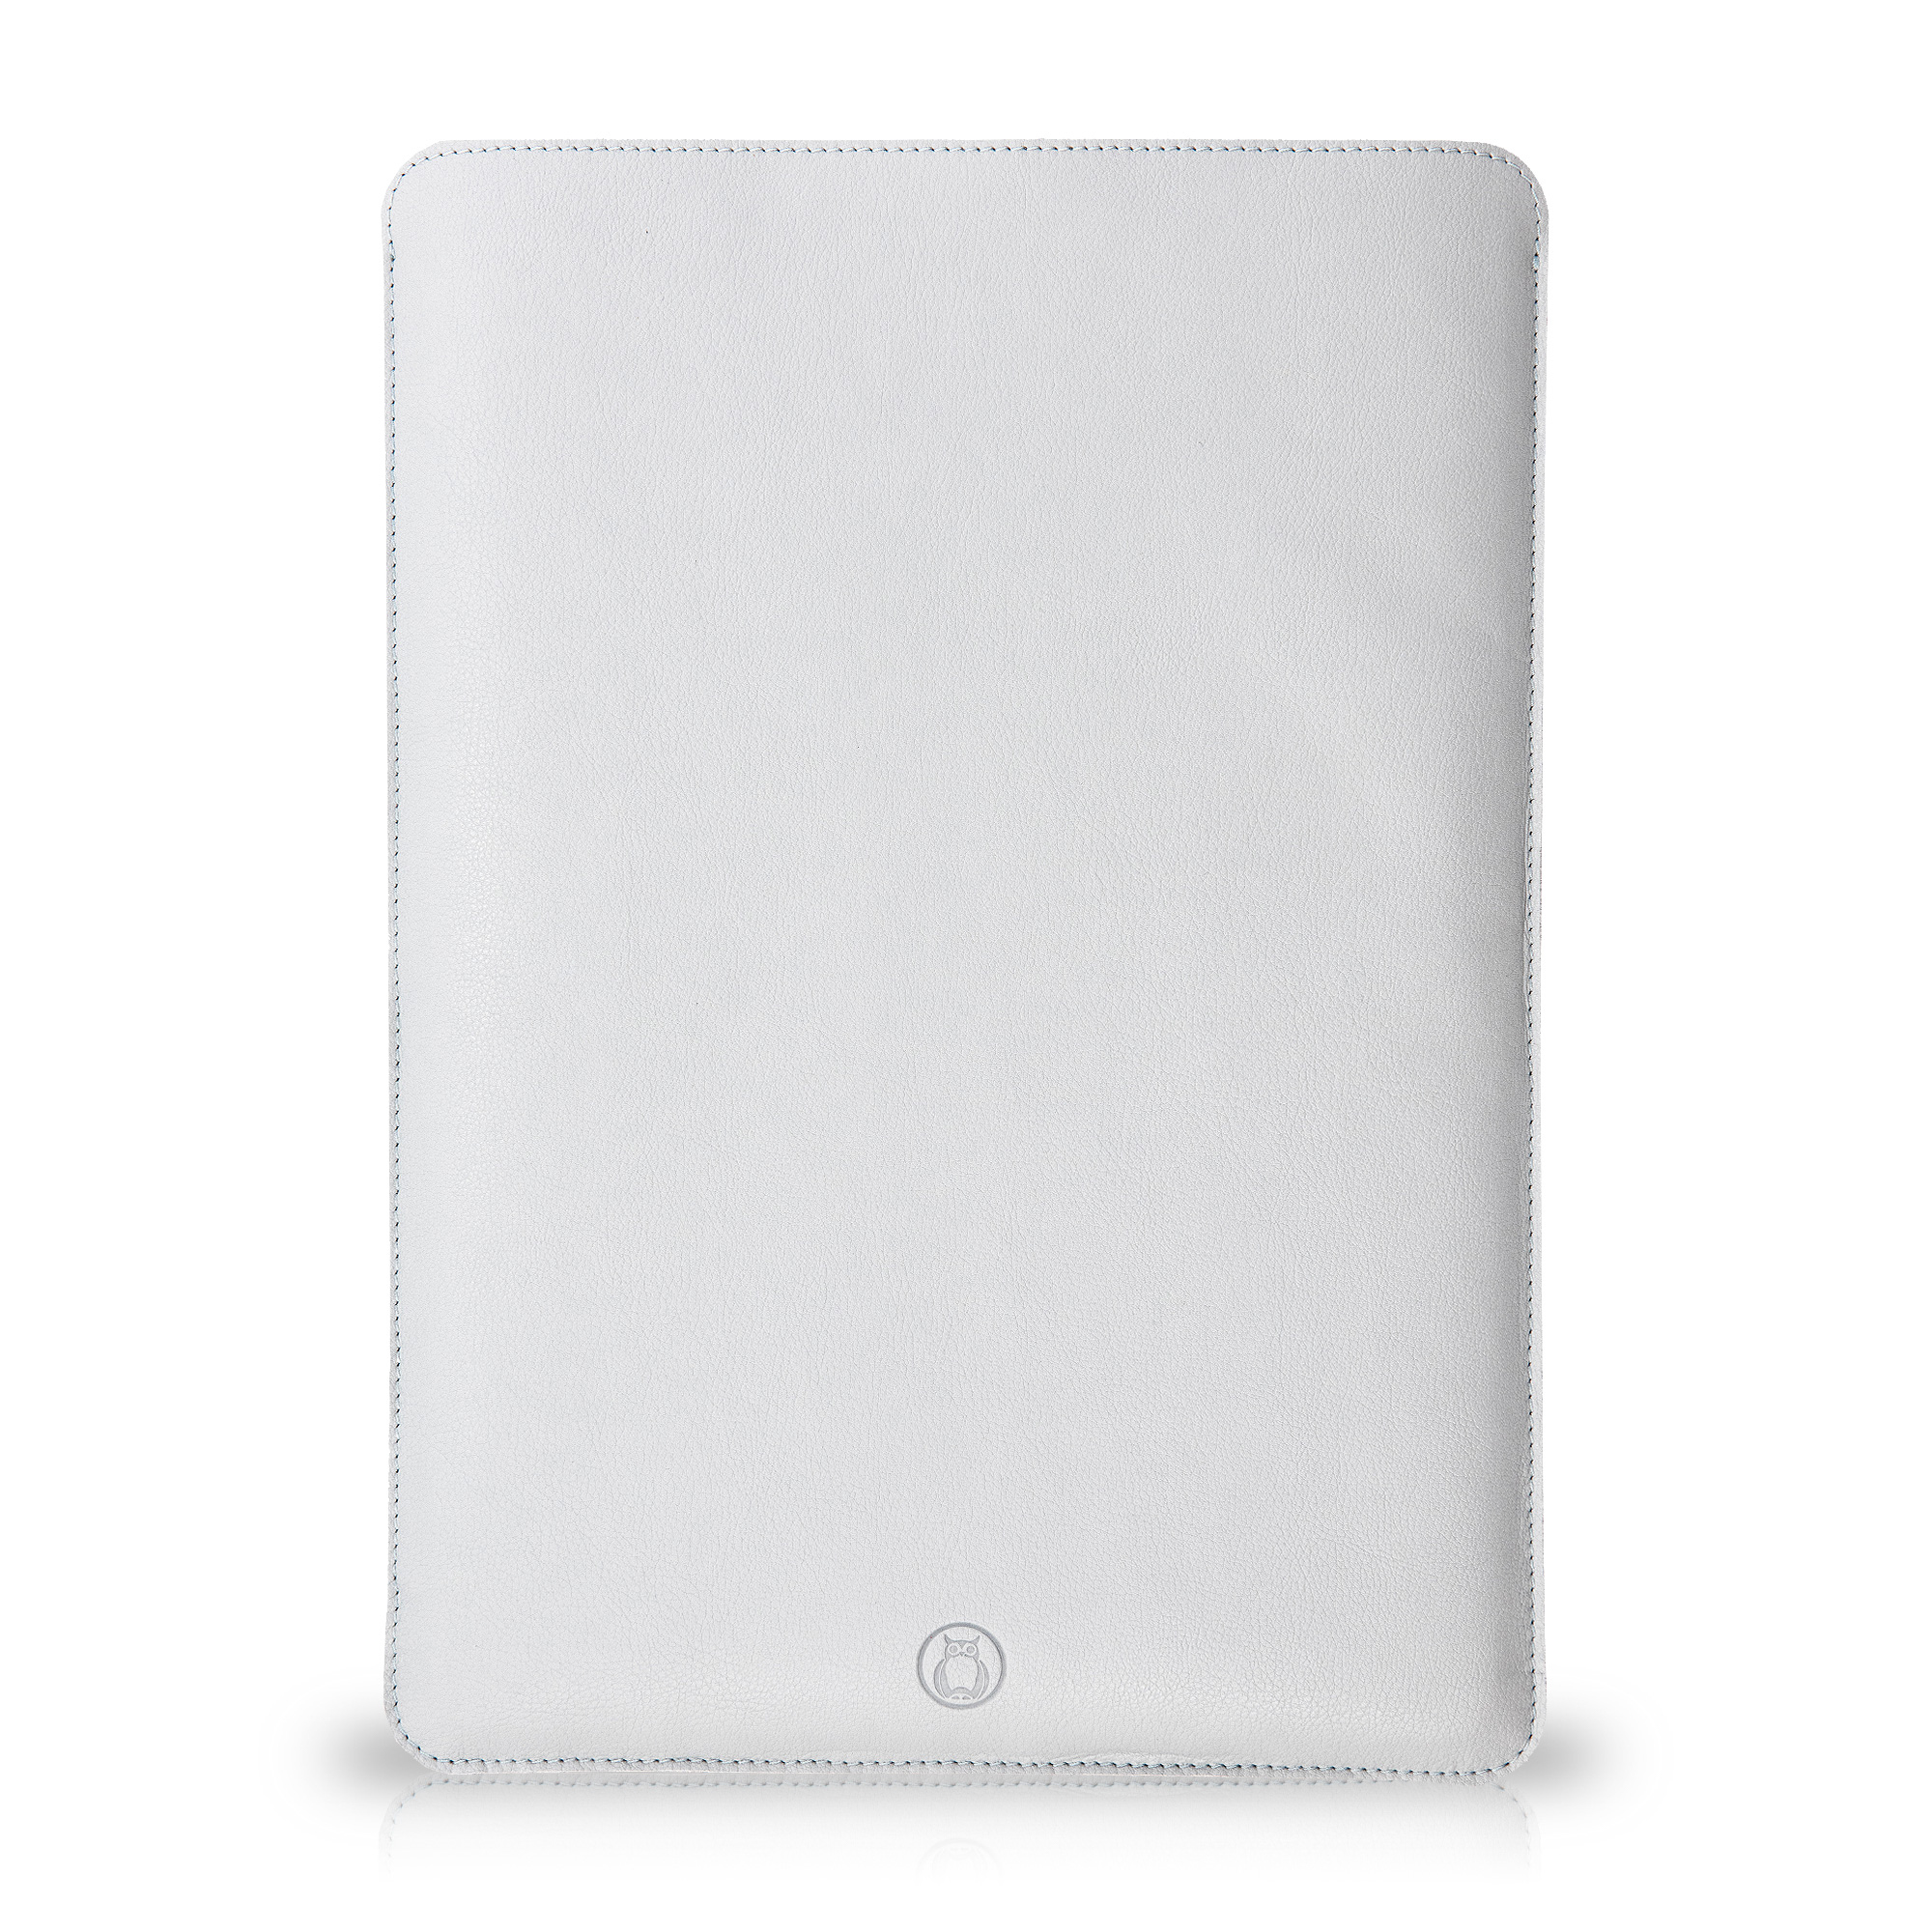 Husa laptop MacBook 15 inch UNIKA piele PU cu lana din fibre naturale gri sanito.ro imagine model 2022